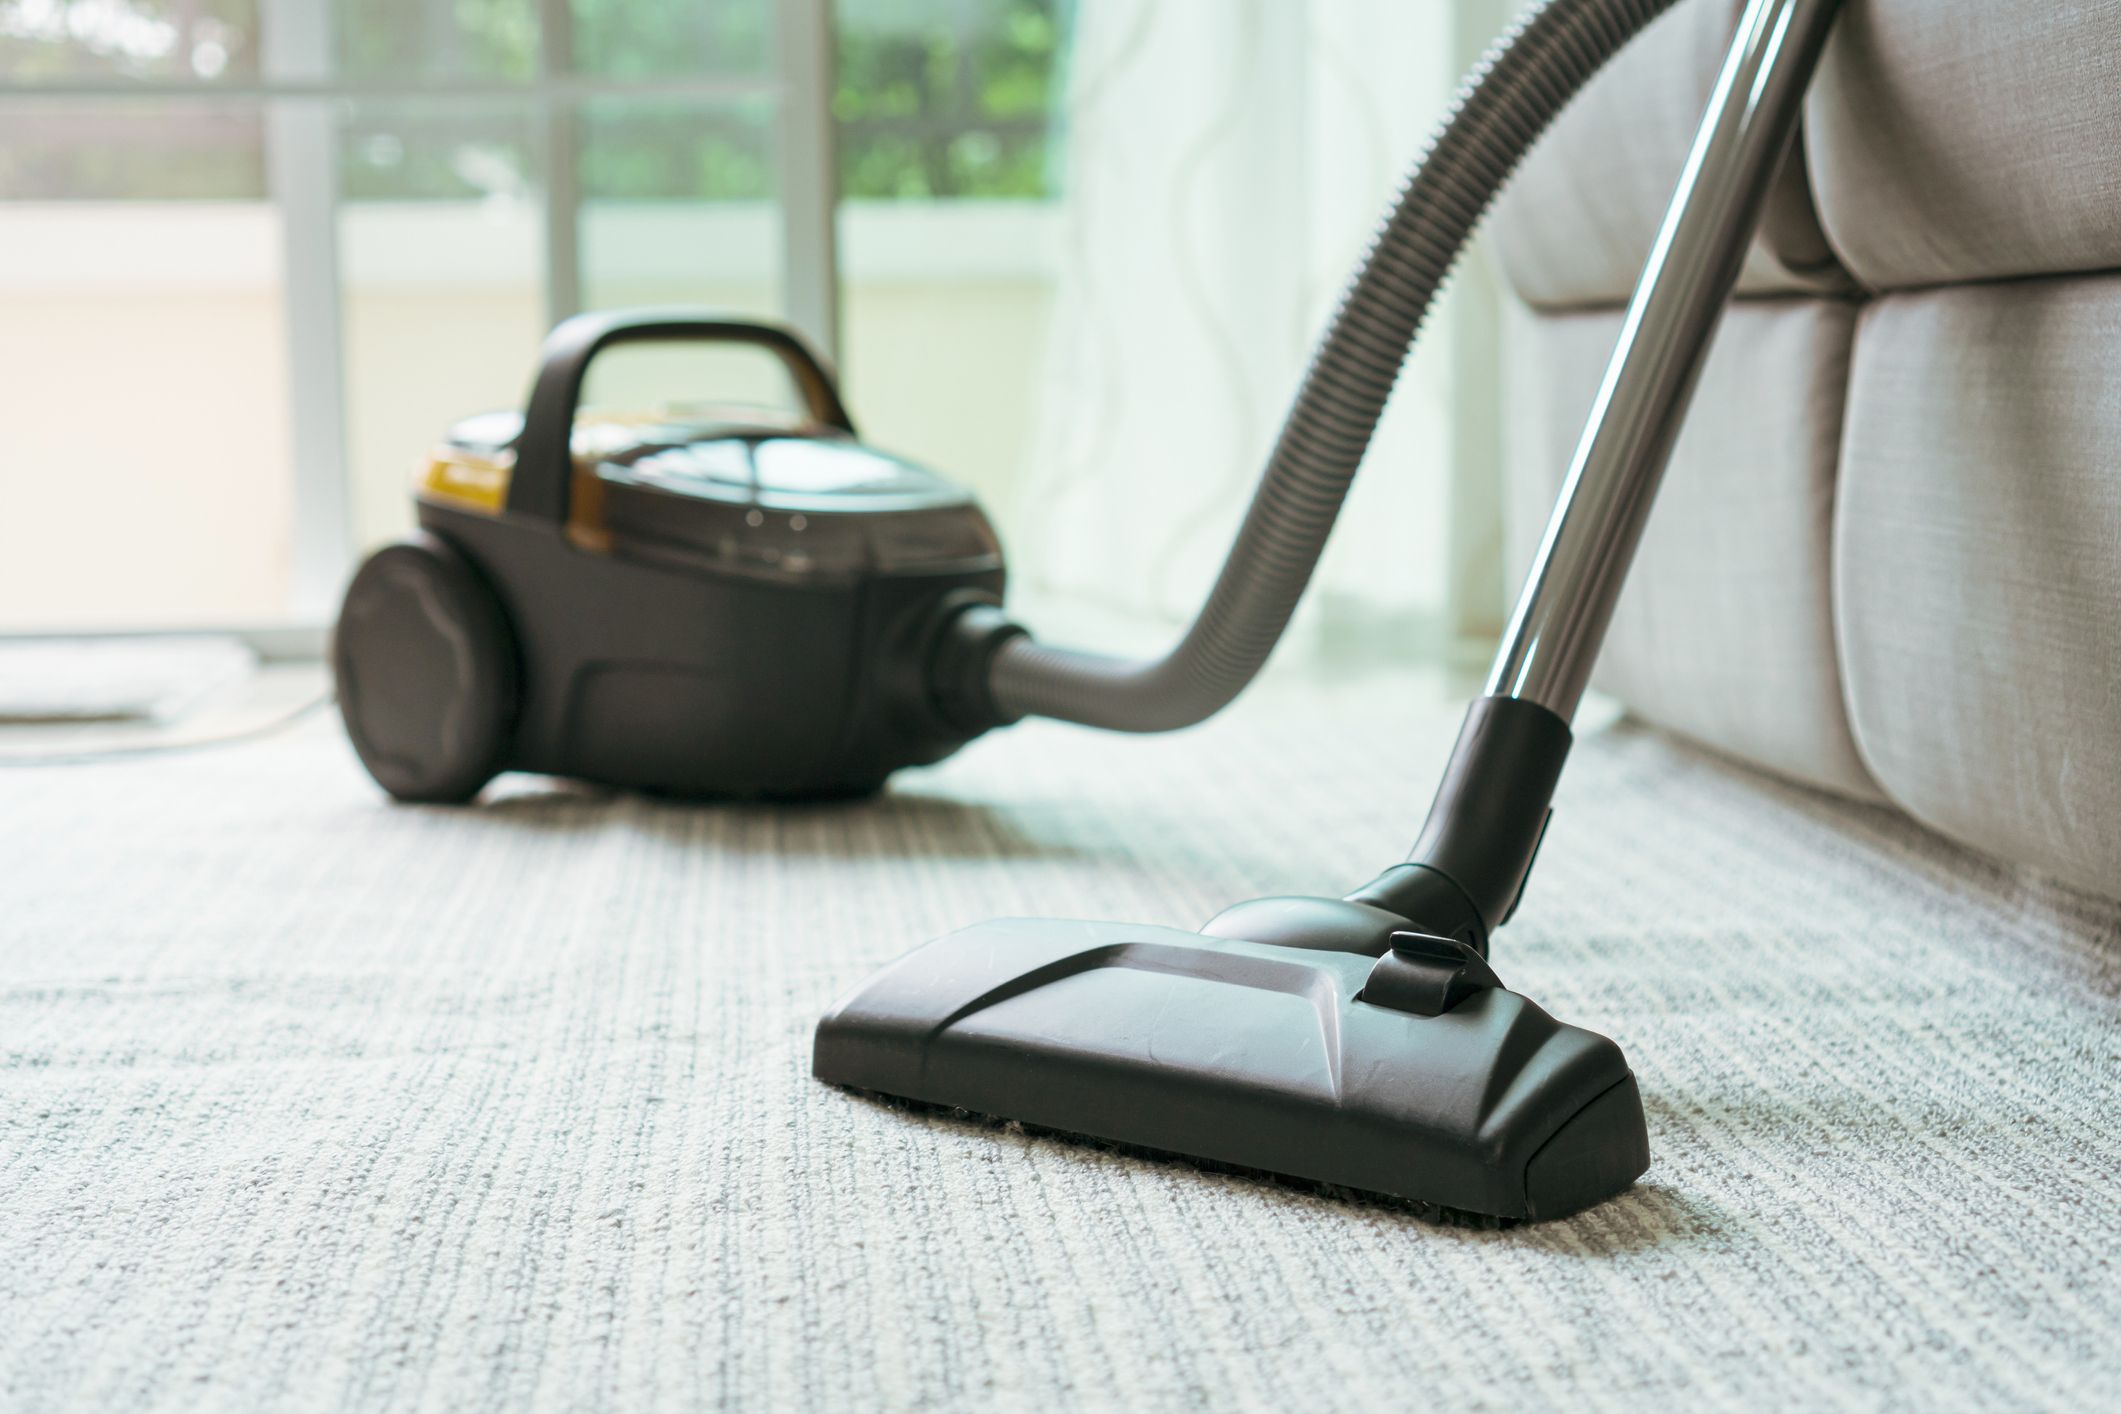 8 Best Hepa Vacuum Cleaners Reviews 2021, Top Vacuums For Hardwood Floors